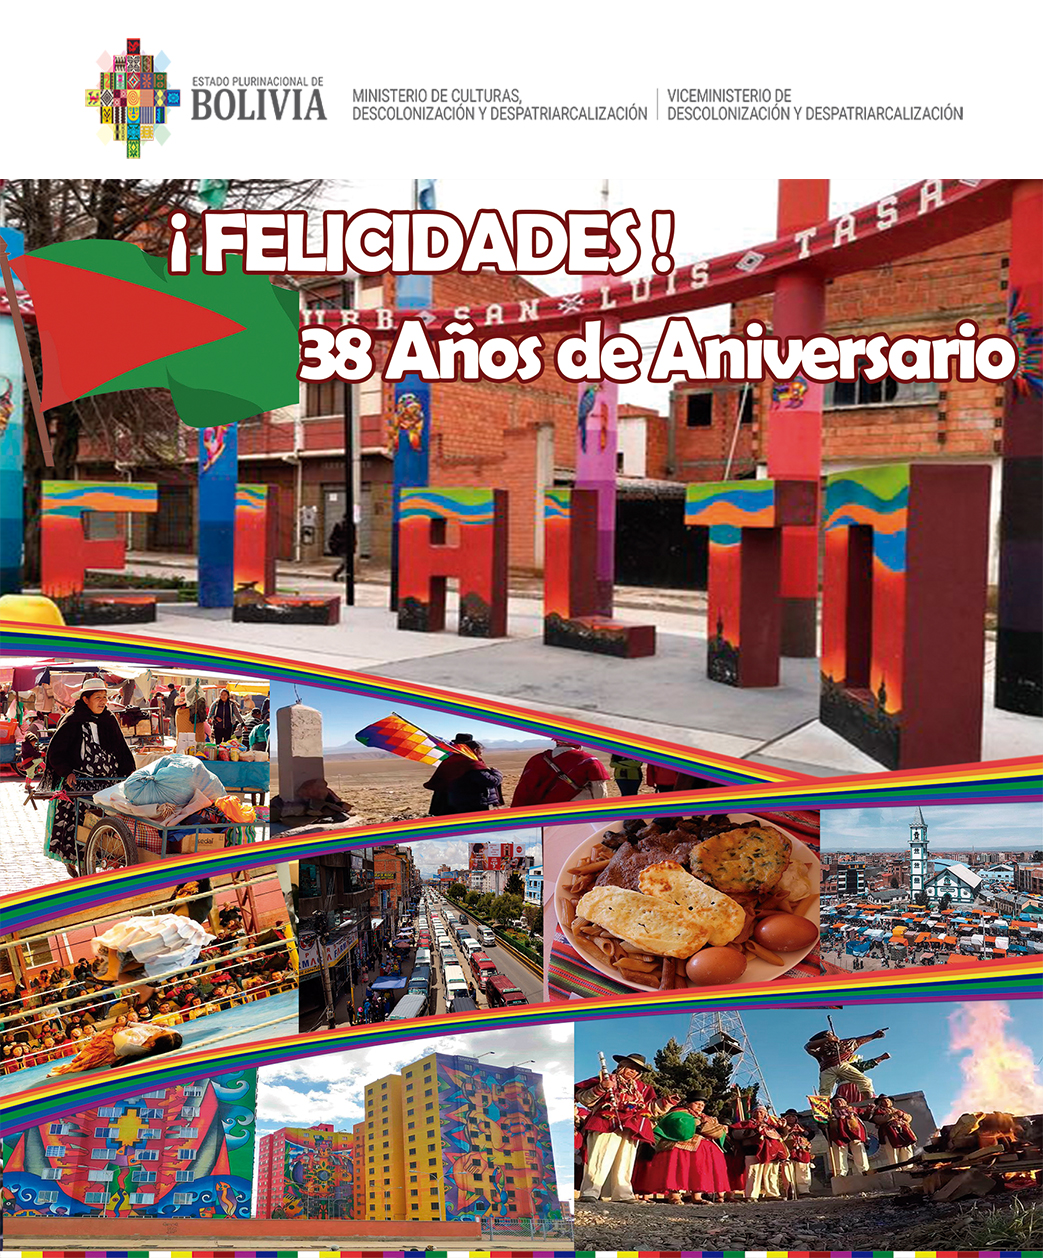 Felicidades ciudad de El Alto en tus 38 años de Vida.